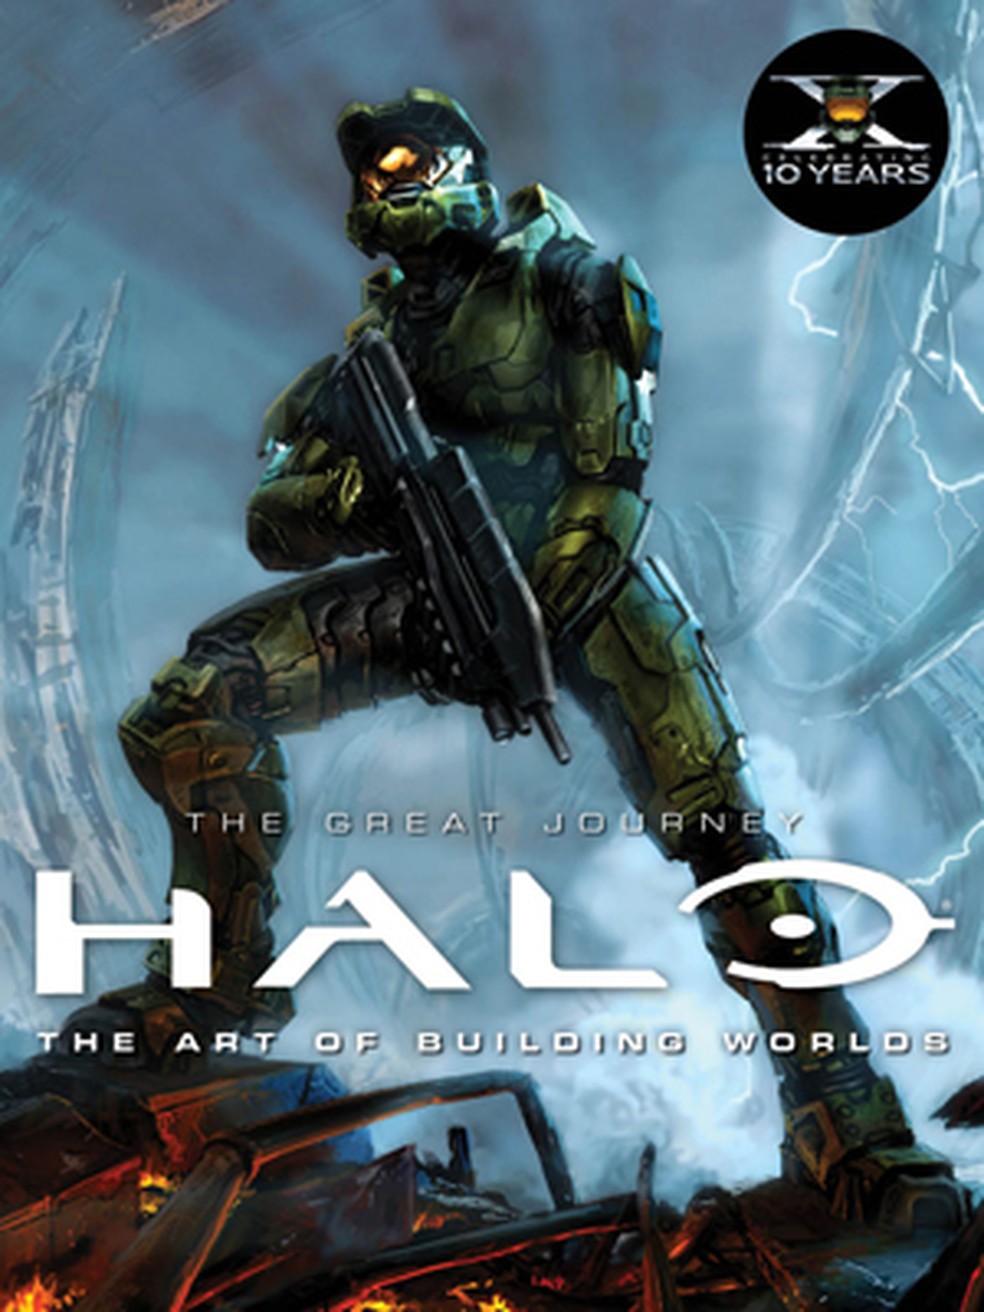 Série de Halo já está disponível no Brasil; veja como assistir